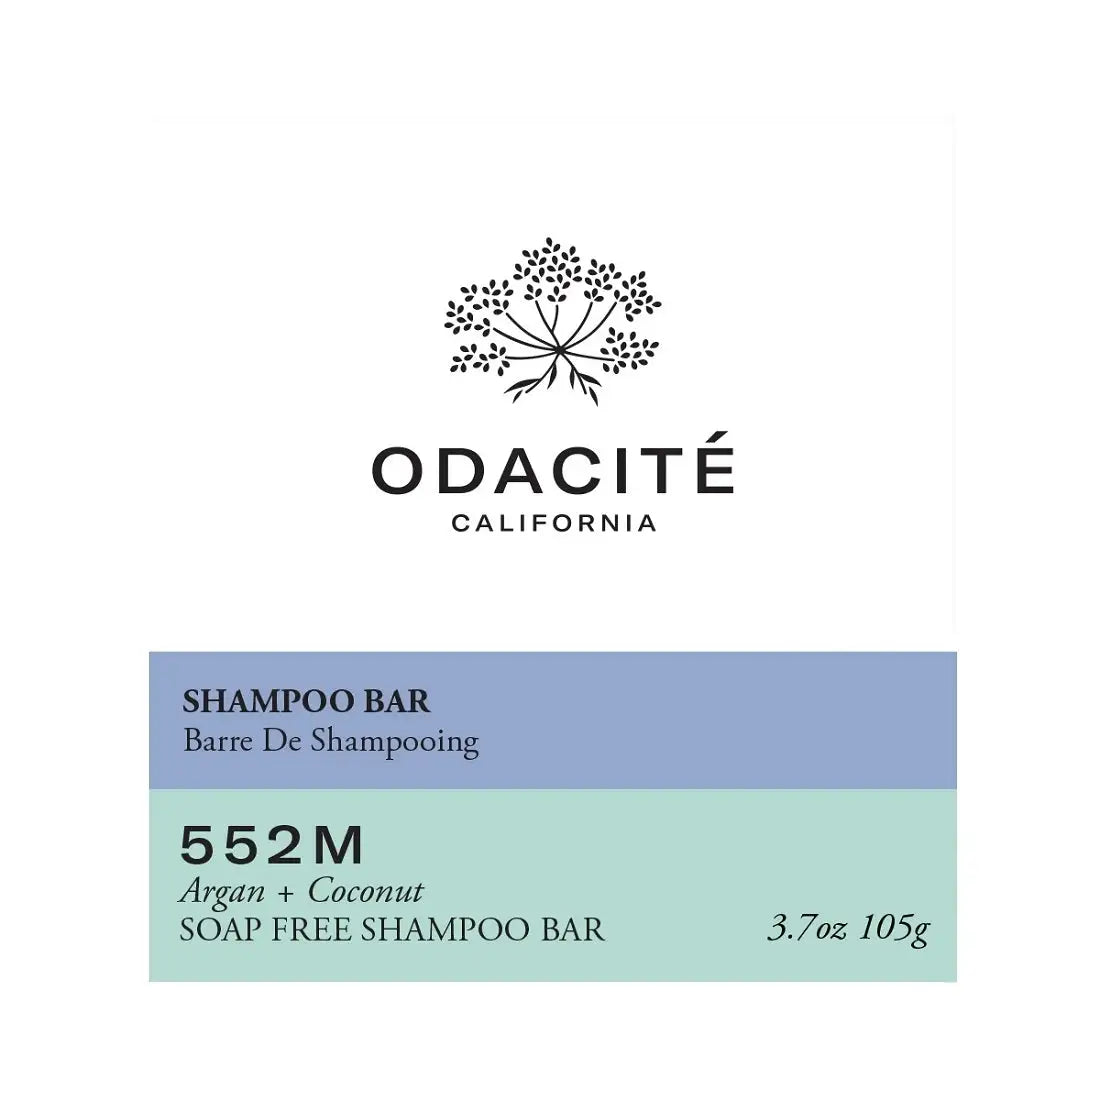 Odacite 552M Argan + Coconut Soap Free Shampoo Bar 105g - 